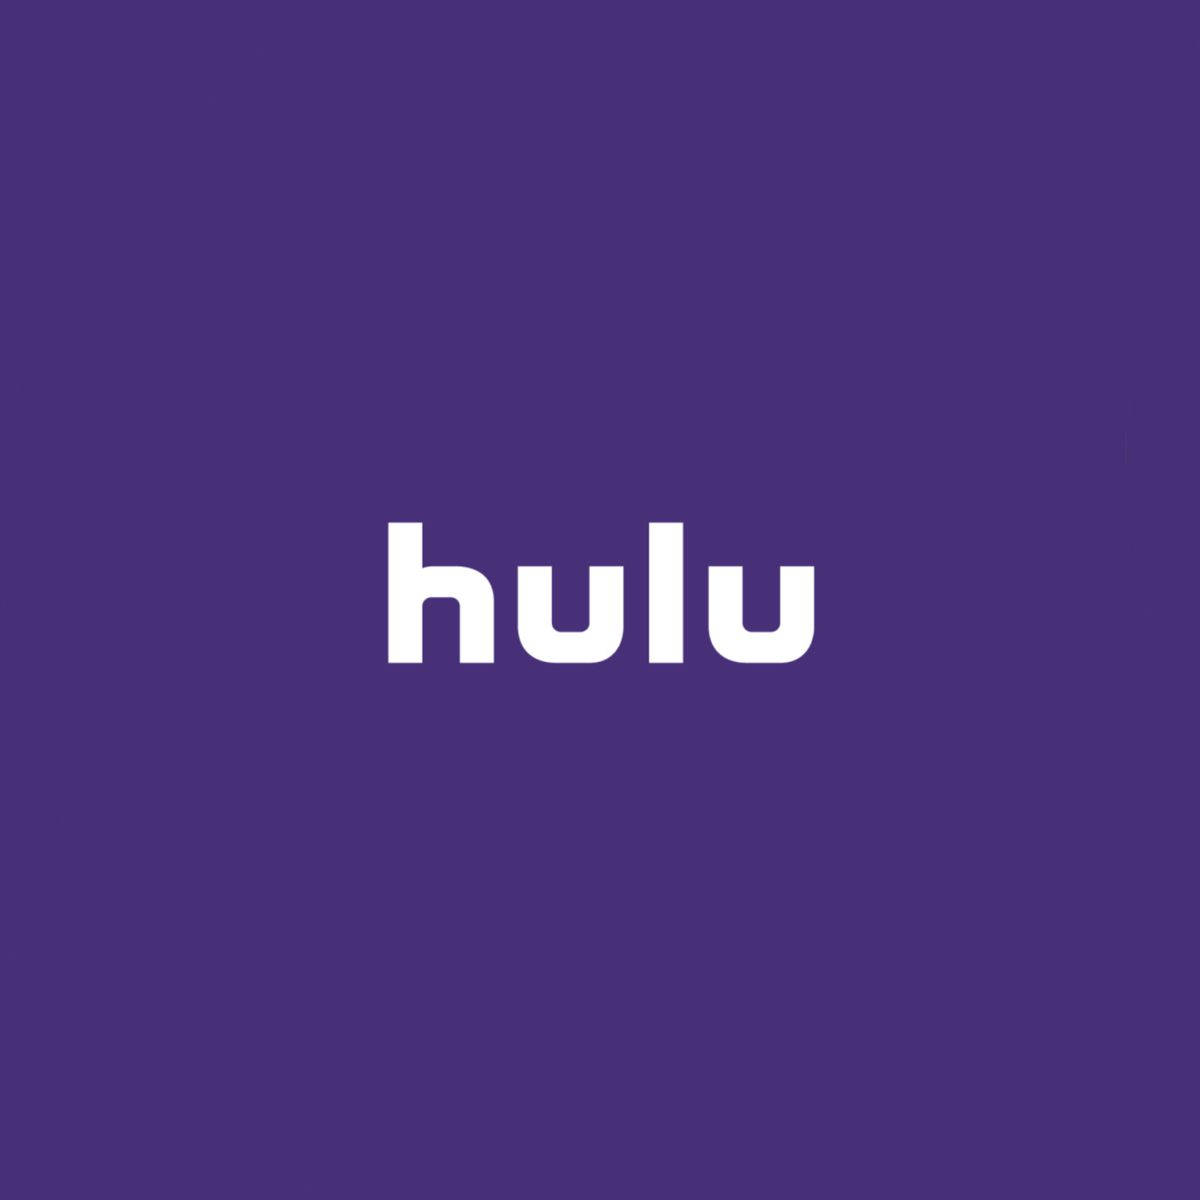 Hulu Violet Aesthetic